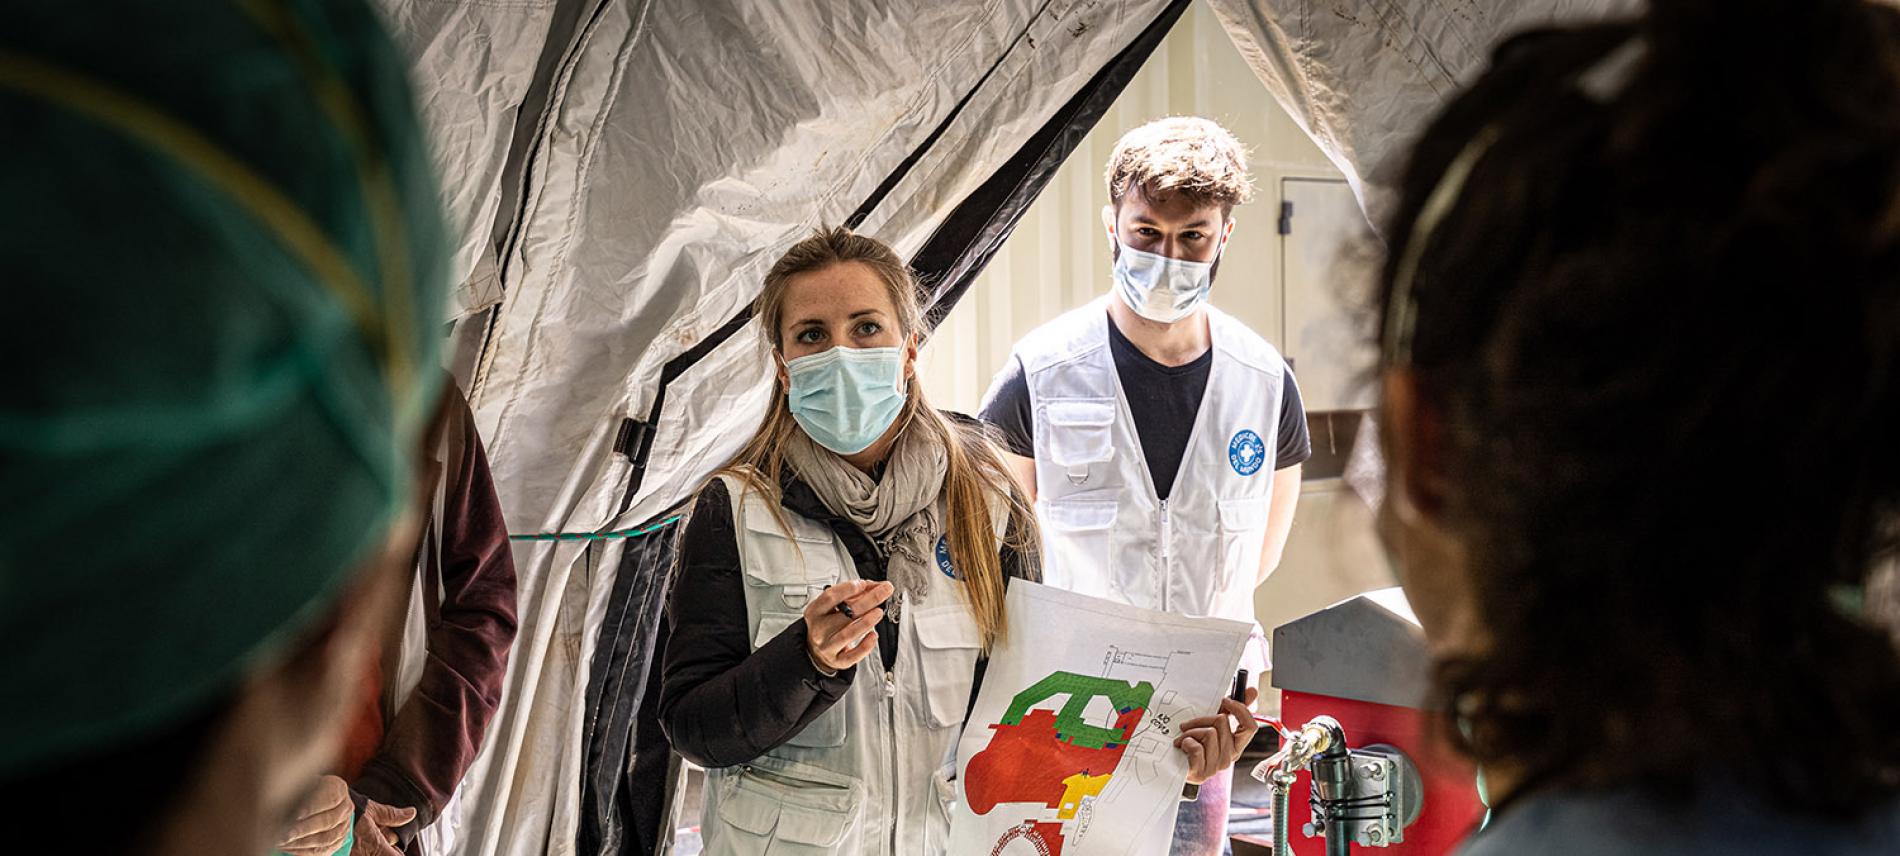 Ärzte der Welt setzt sich weltweit für die Eindämmung der Corona-Pandemie ein. Foto: Ignacio Marin 